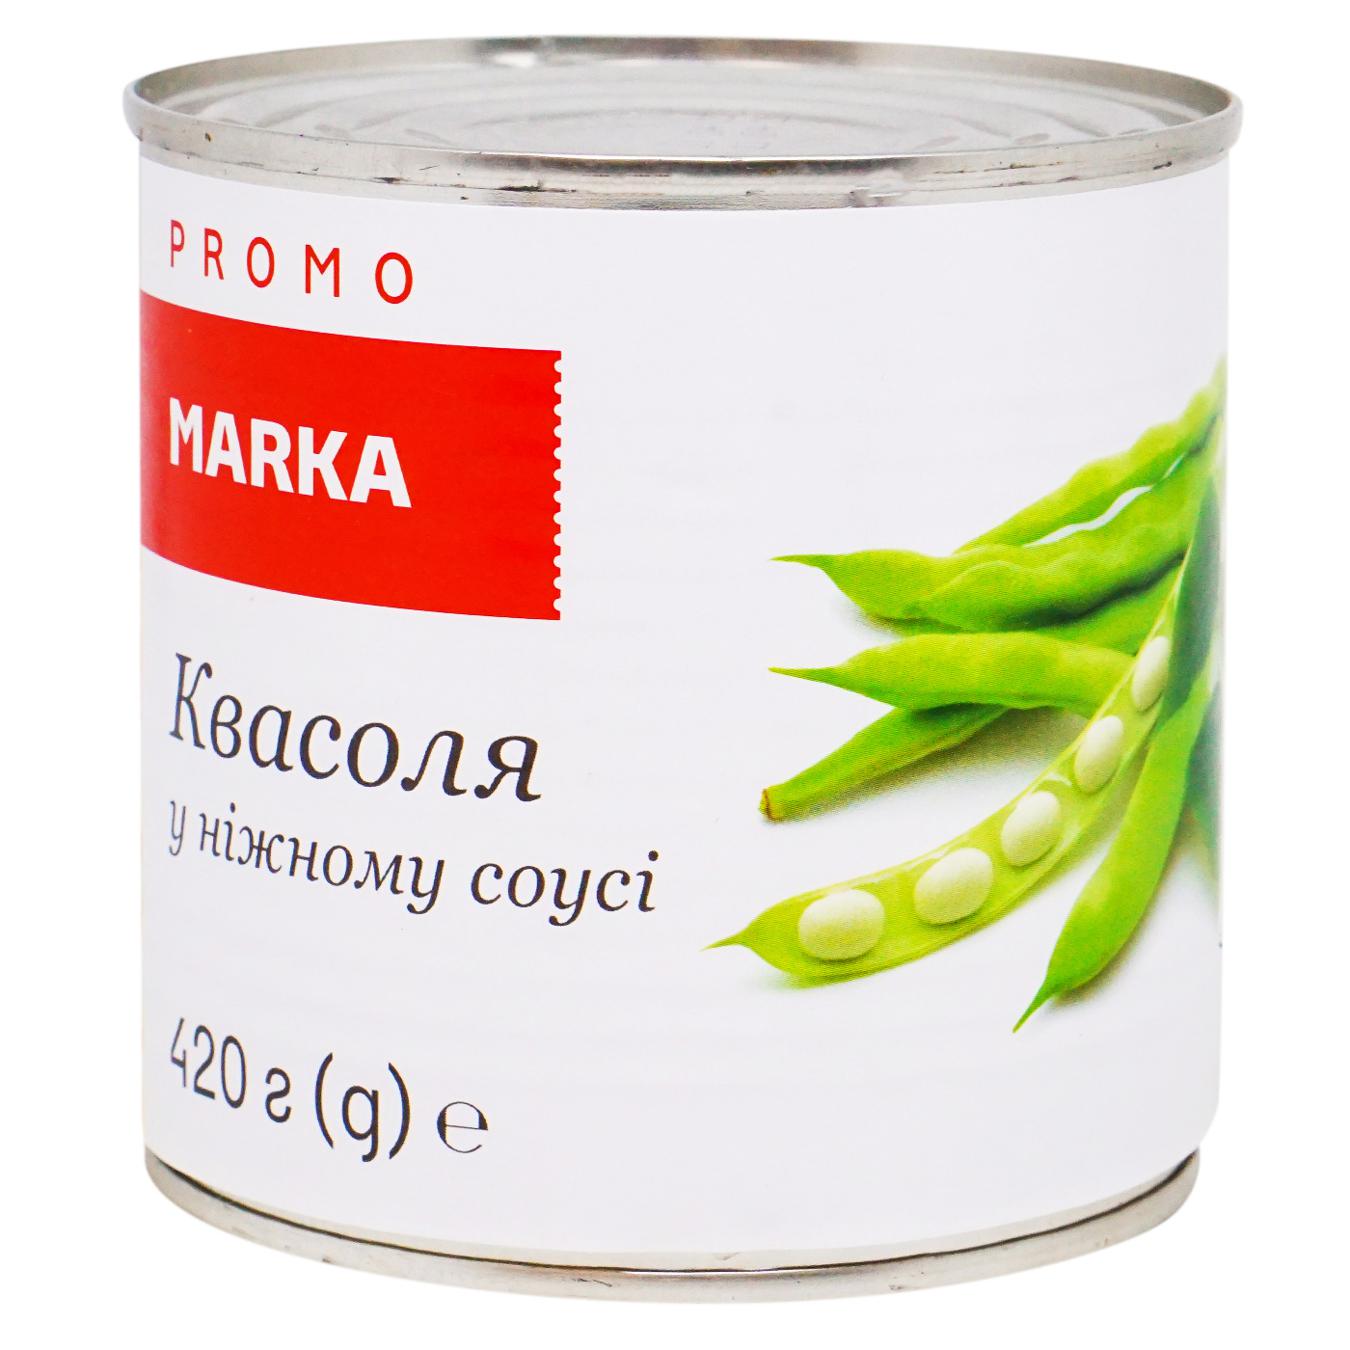 Beans Marka Promo Firmova white 420g